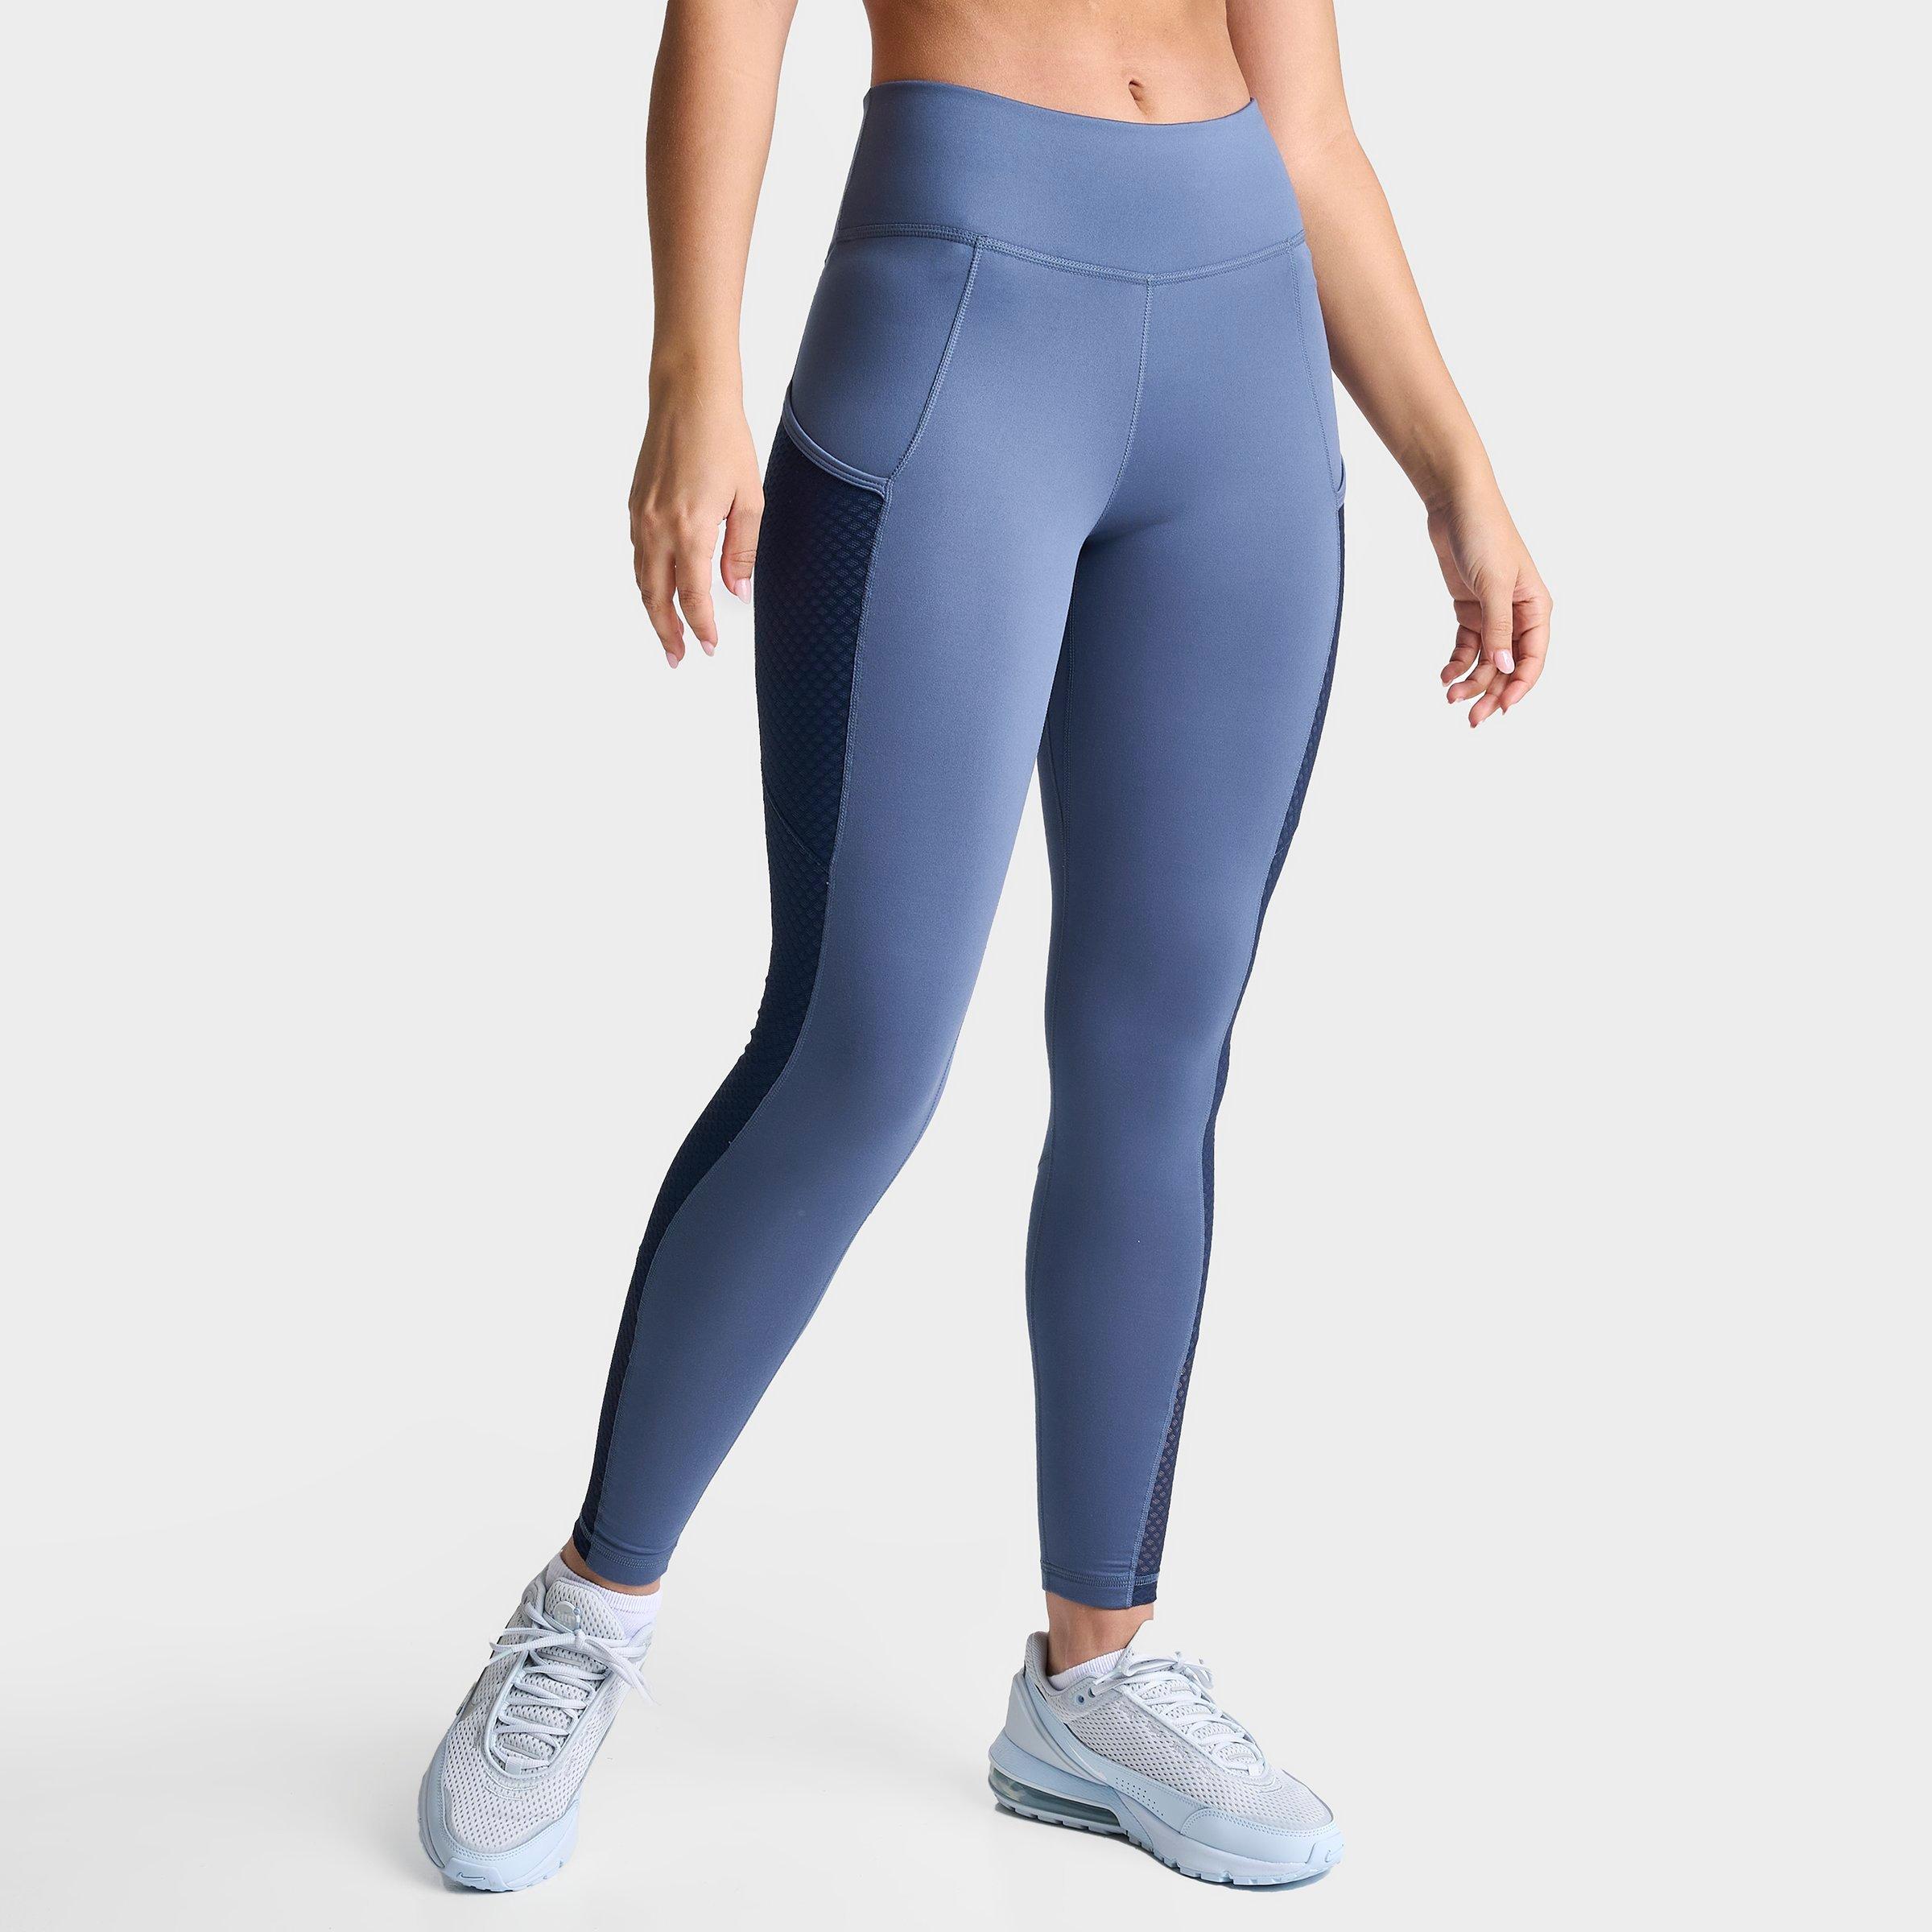 Navy & Blue Striped Nike leggings in sz XS 